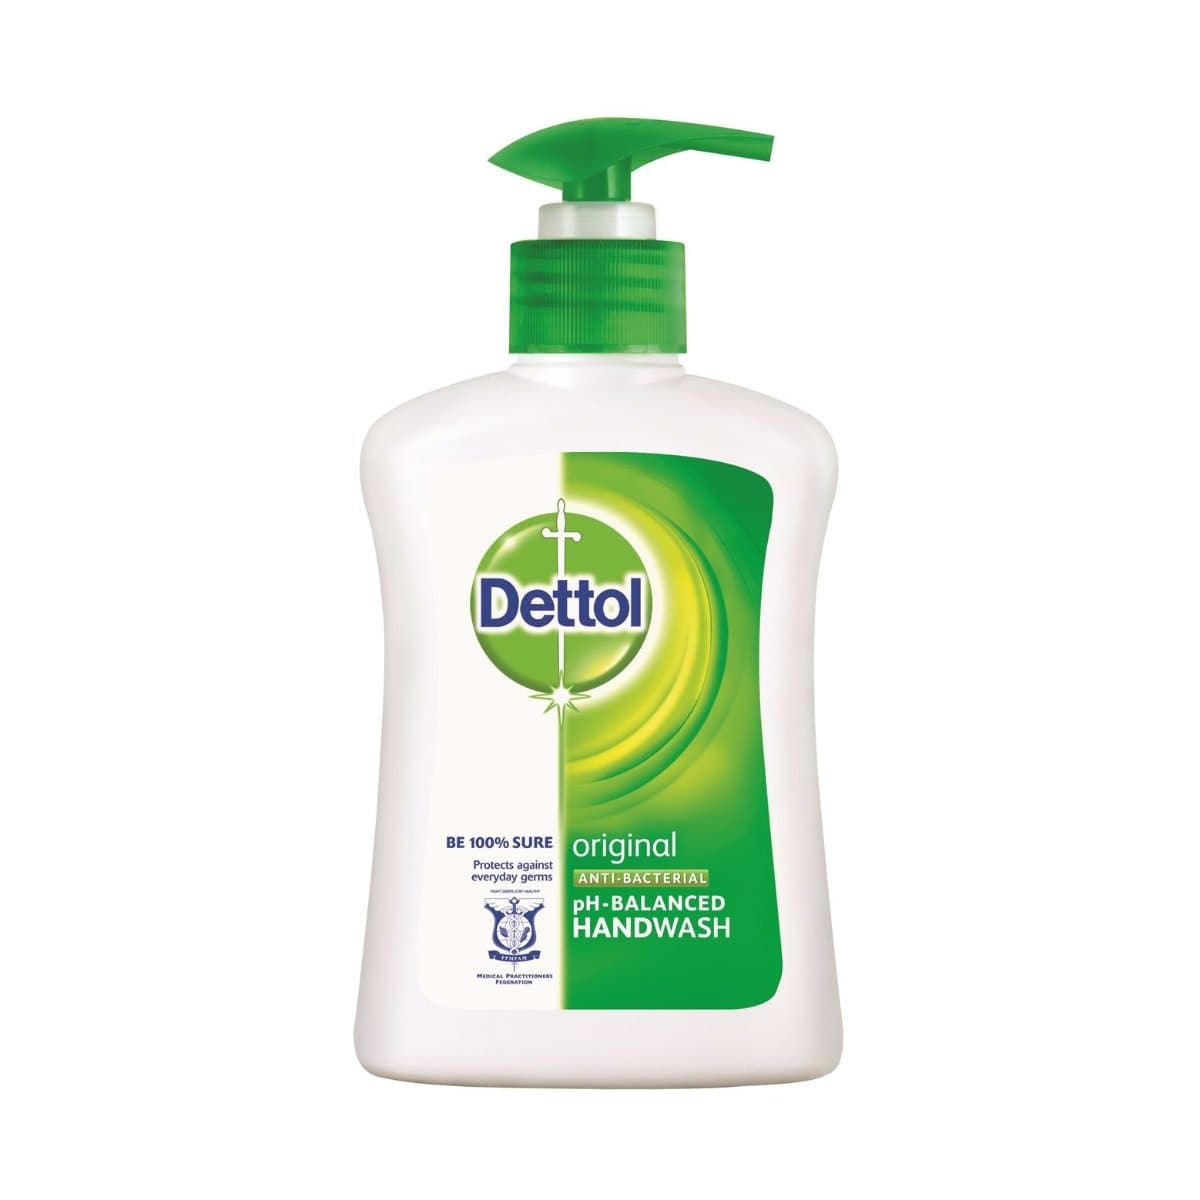 Dettol Handwash Anti-Bacterial 200ml